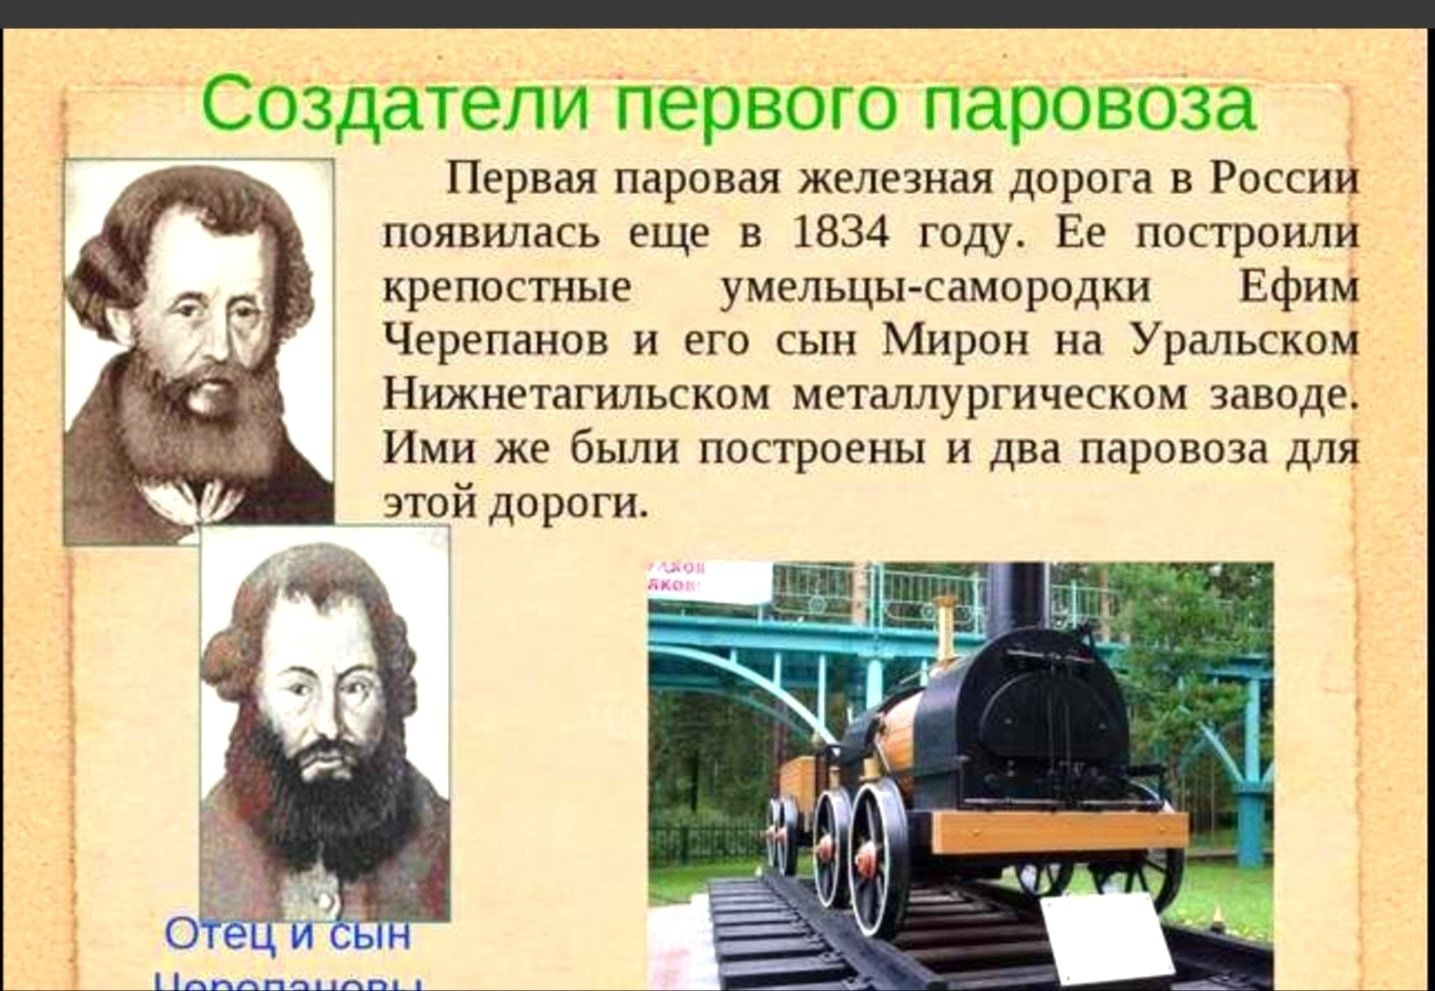 Сообщение первый в мире человек. Первый паровоз в мире и его изобретатель. Первый изобретатель паровоза в России. Черепановы создатели первого российского паровоза. Изобретатели паровоза Черепановы.